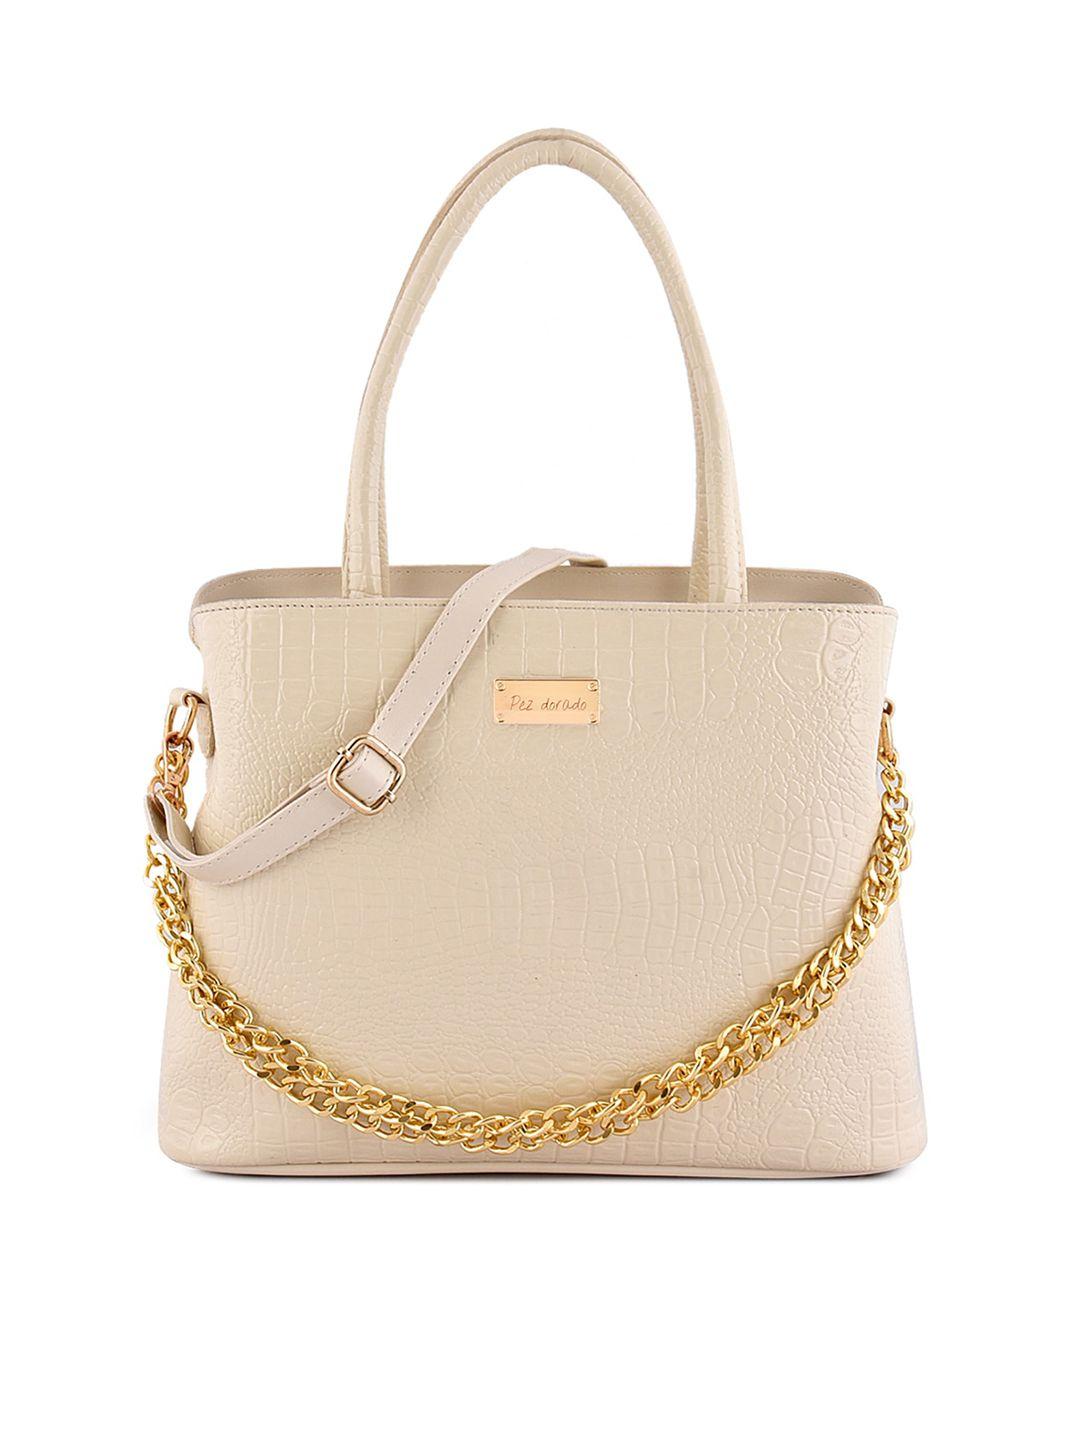 pez dorado off white textured structured satchel bag